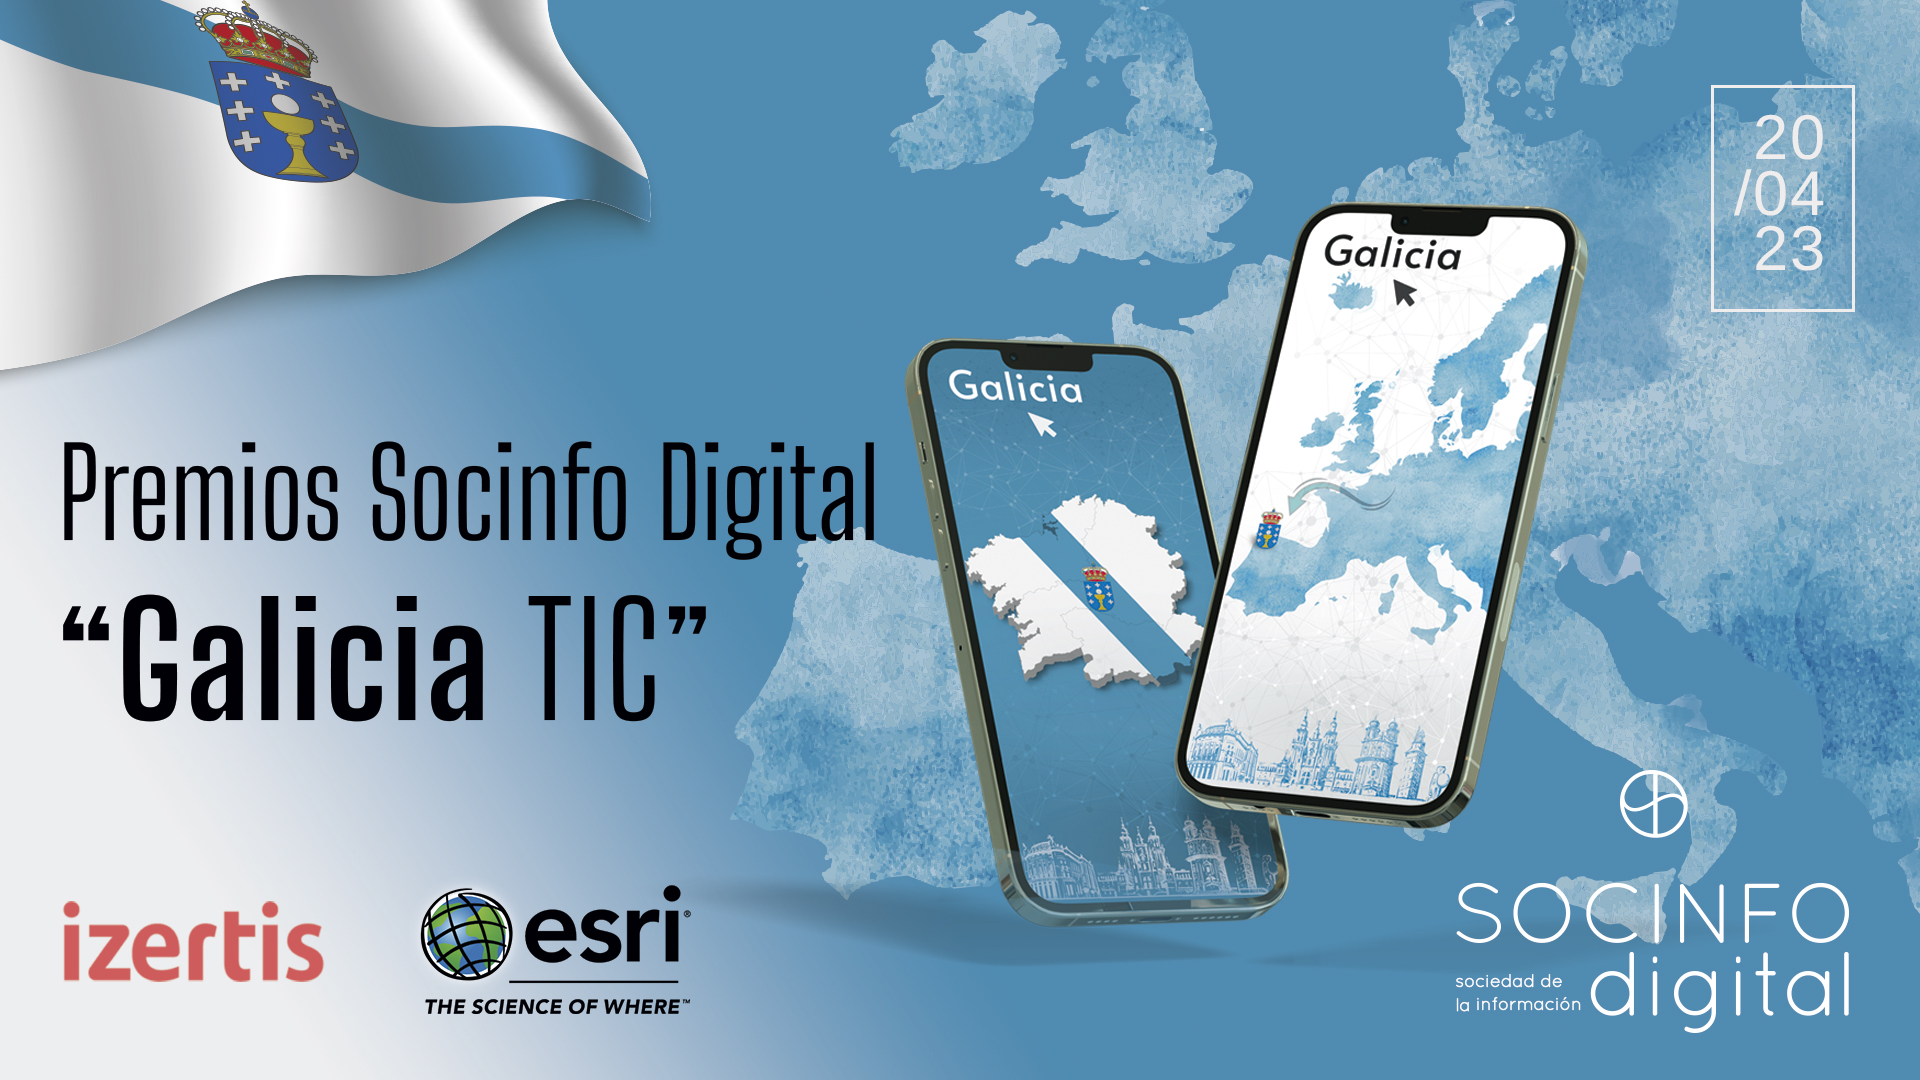 La Revisa Sociedad de la Información Digital convoca los Premios Socinfo Digital: “GALICIA TIC”